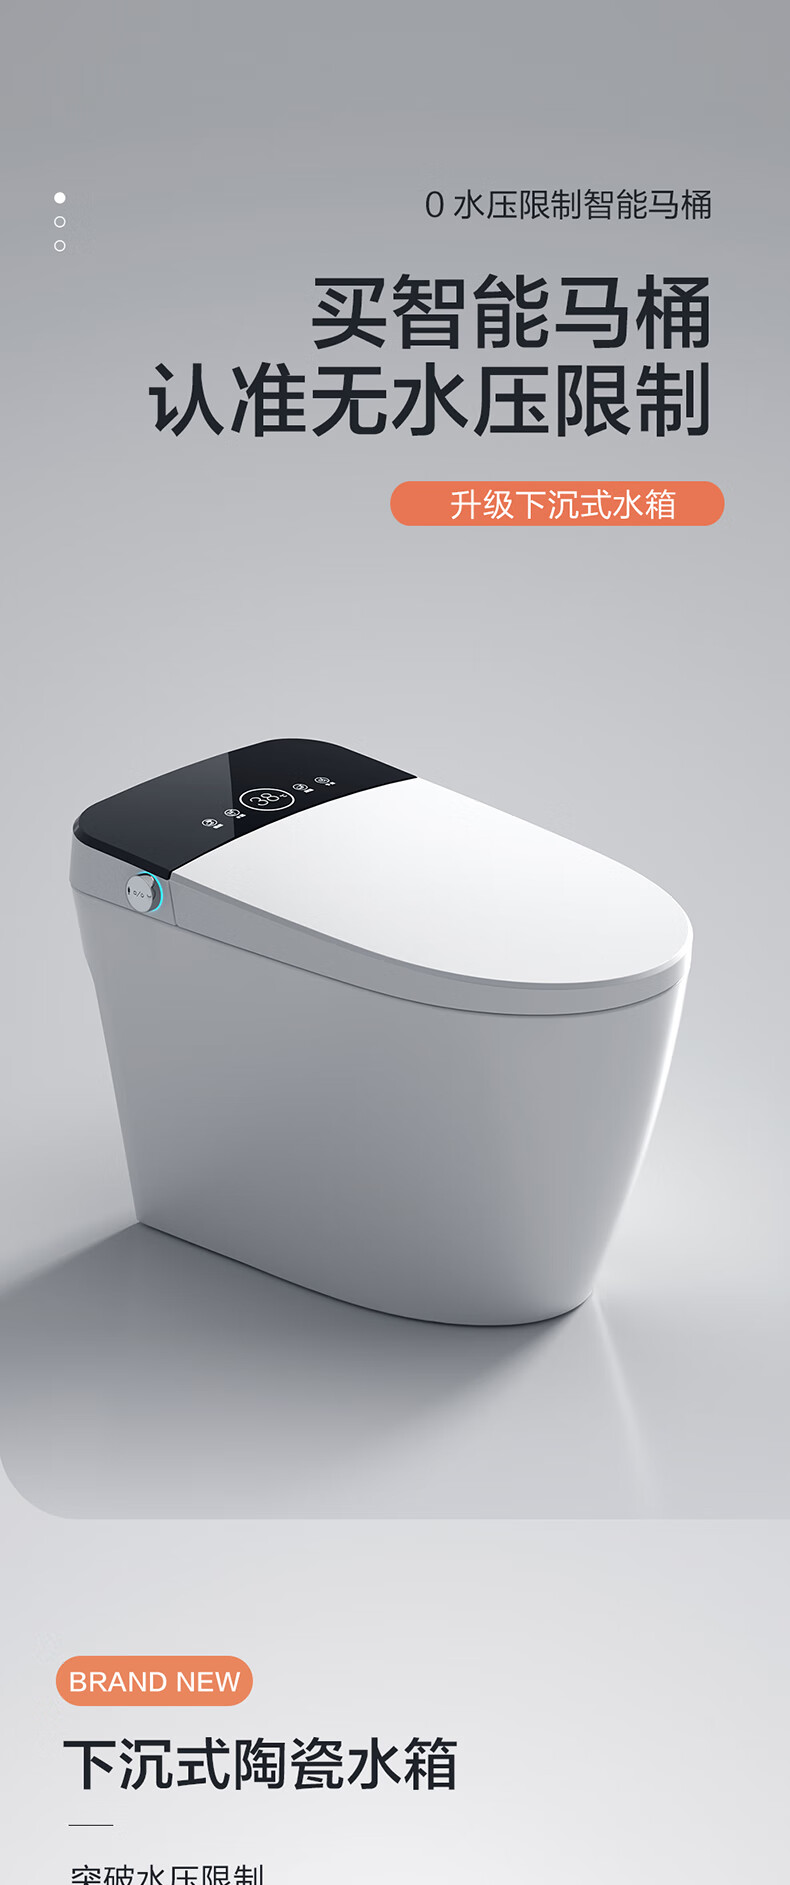 日本智能马桶日本新款智能马桶全自动一体式遥控加热语音泡沫无水压